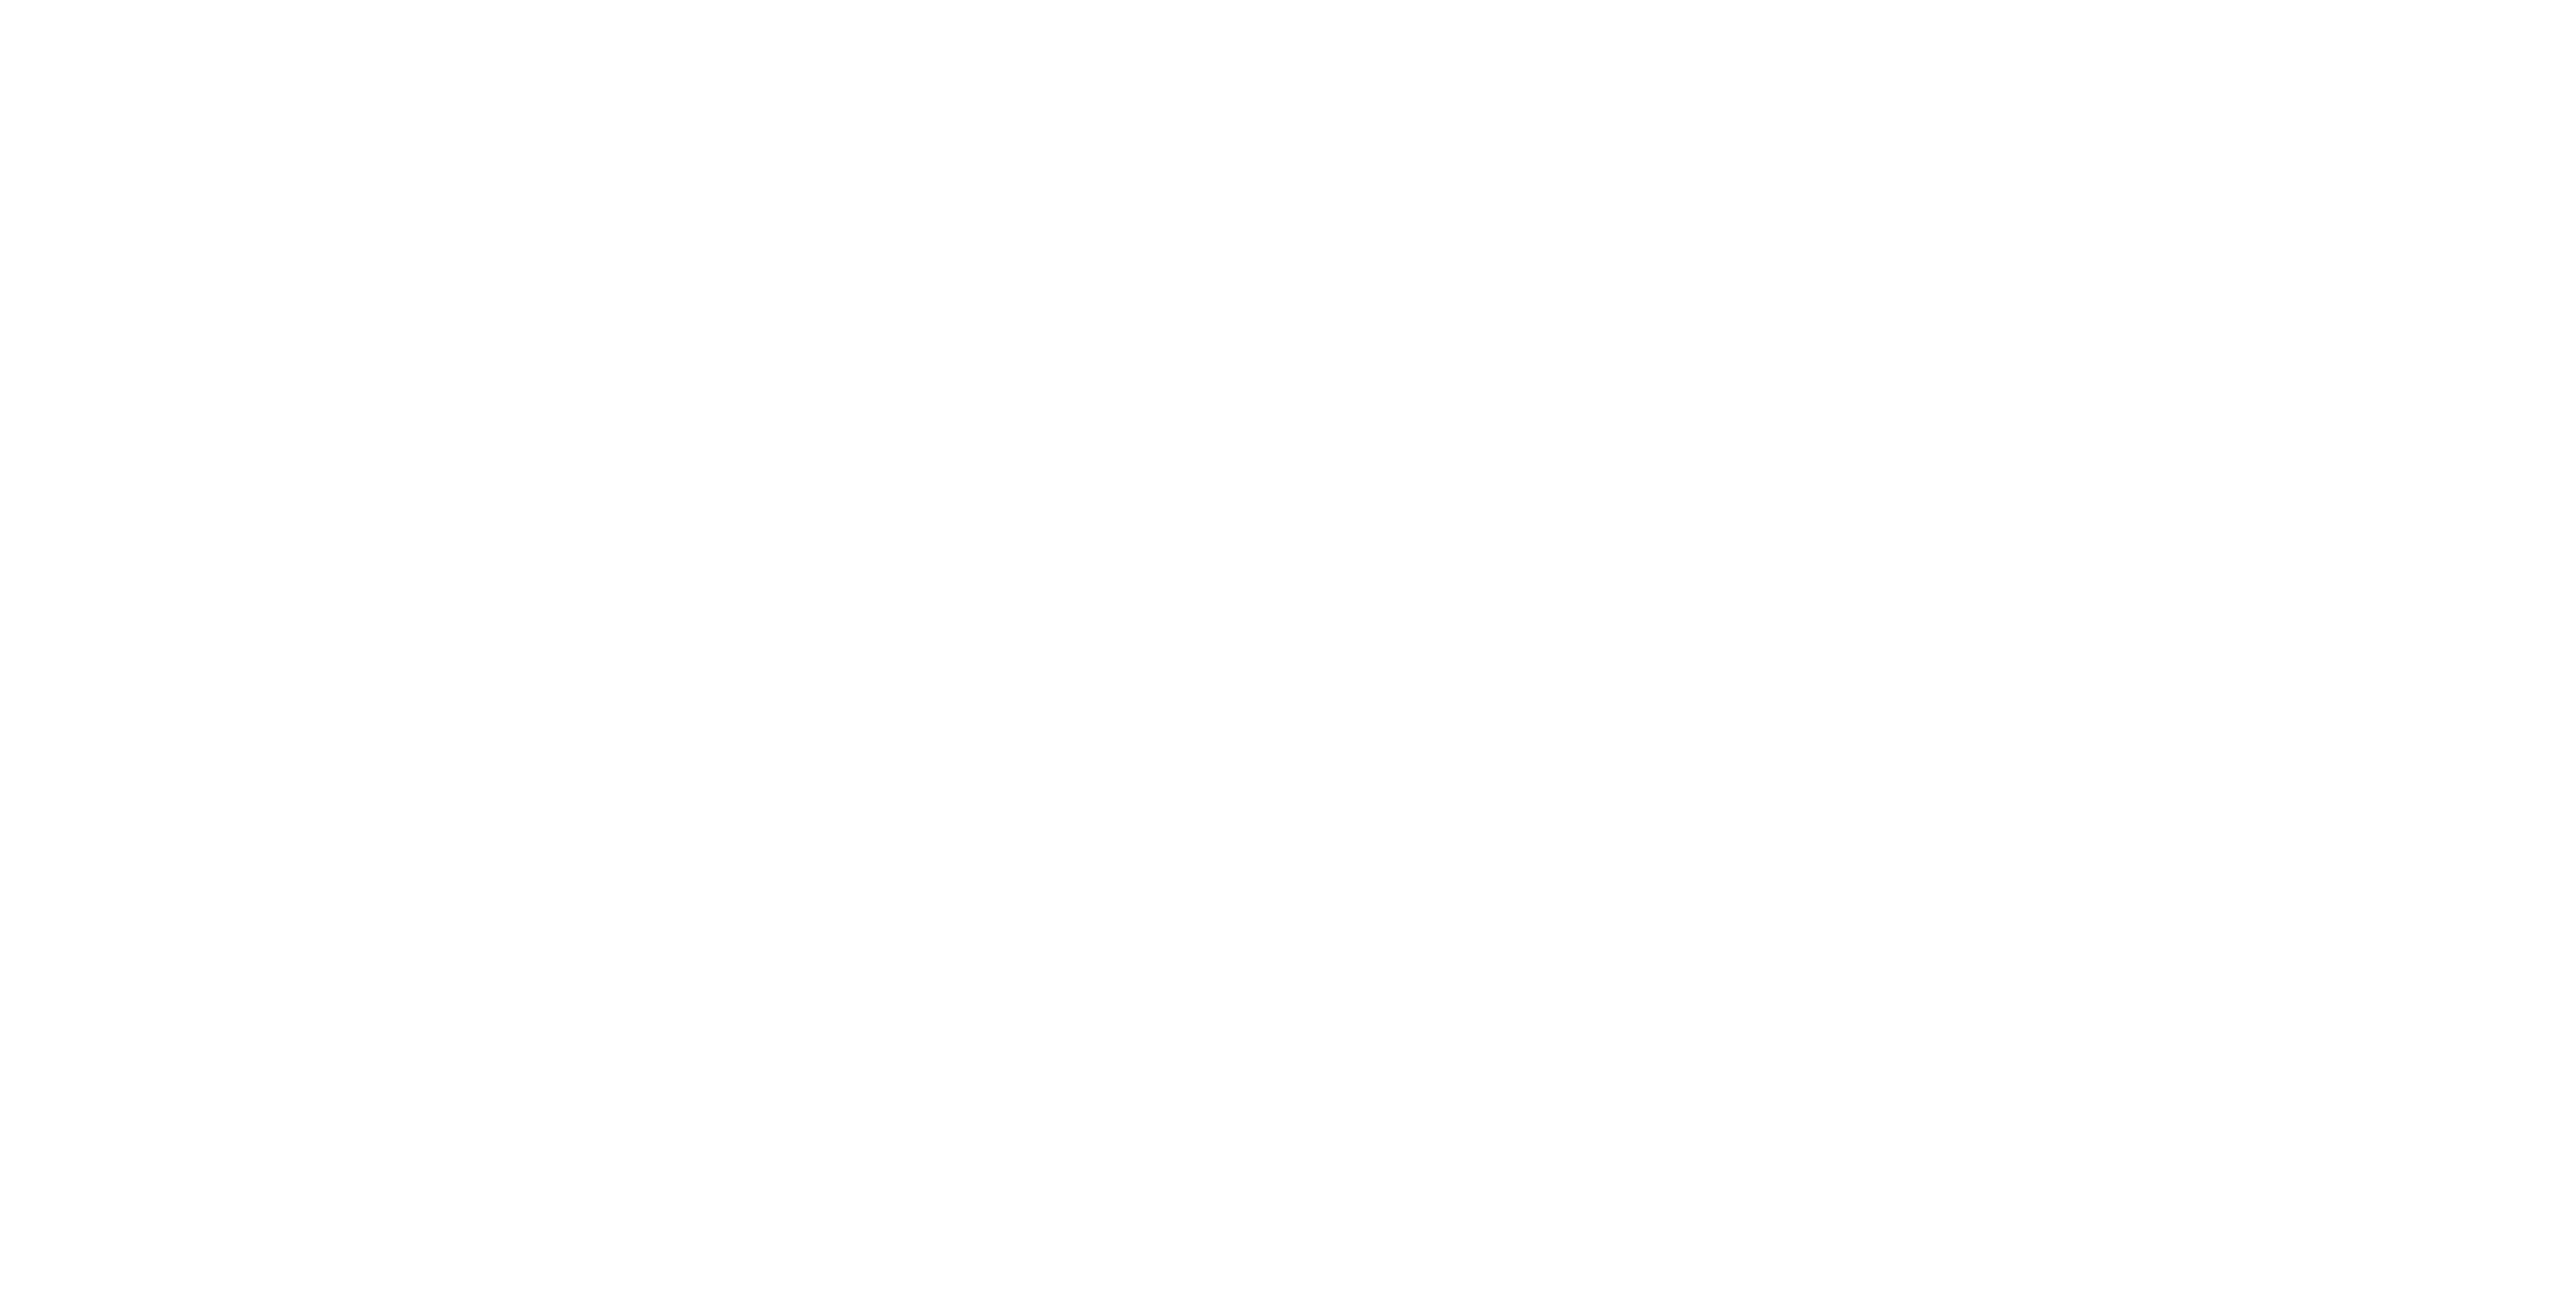 trailer tales logo